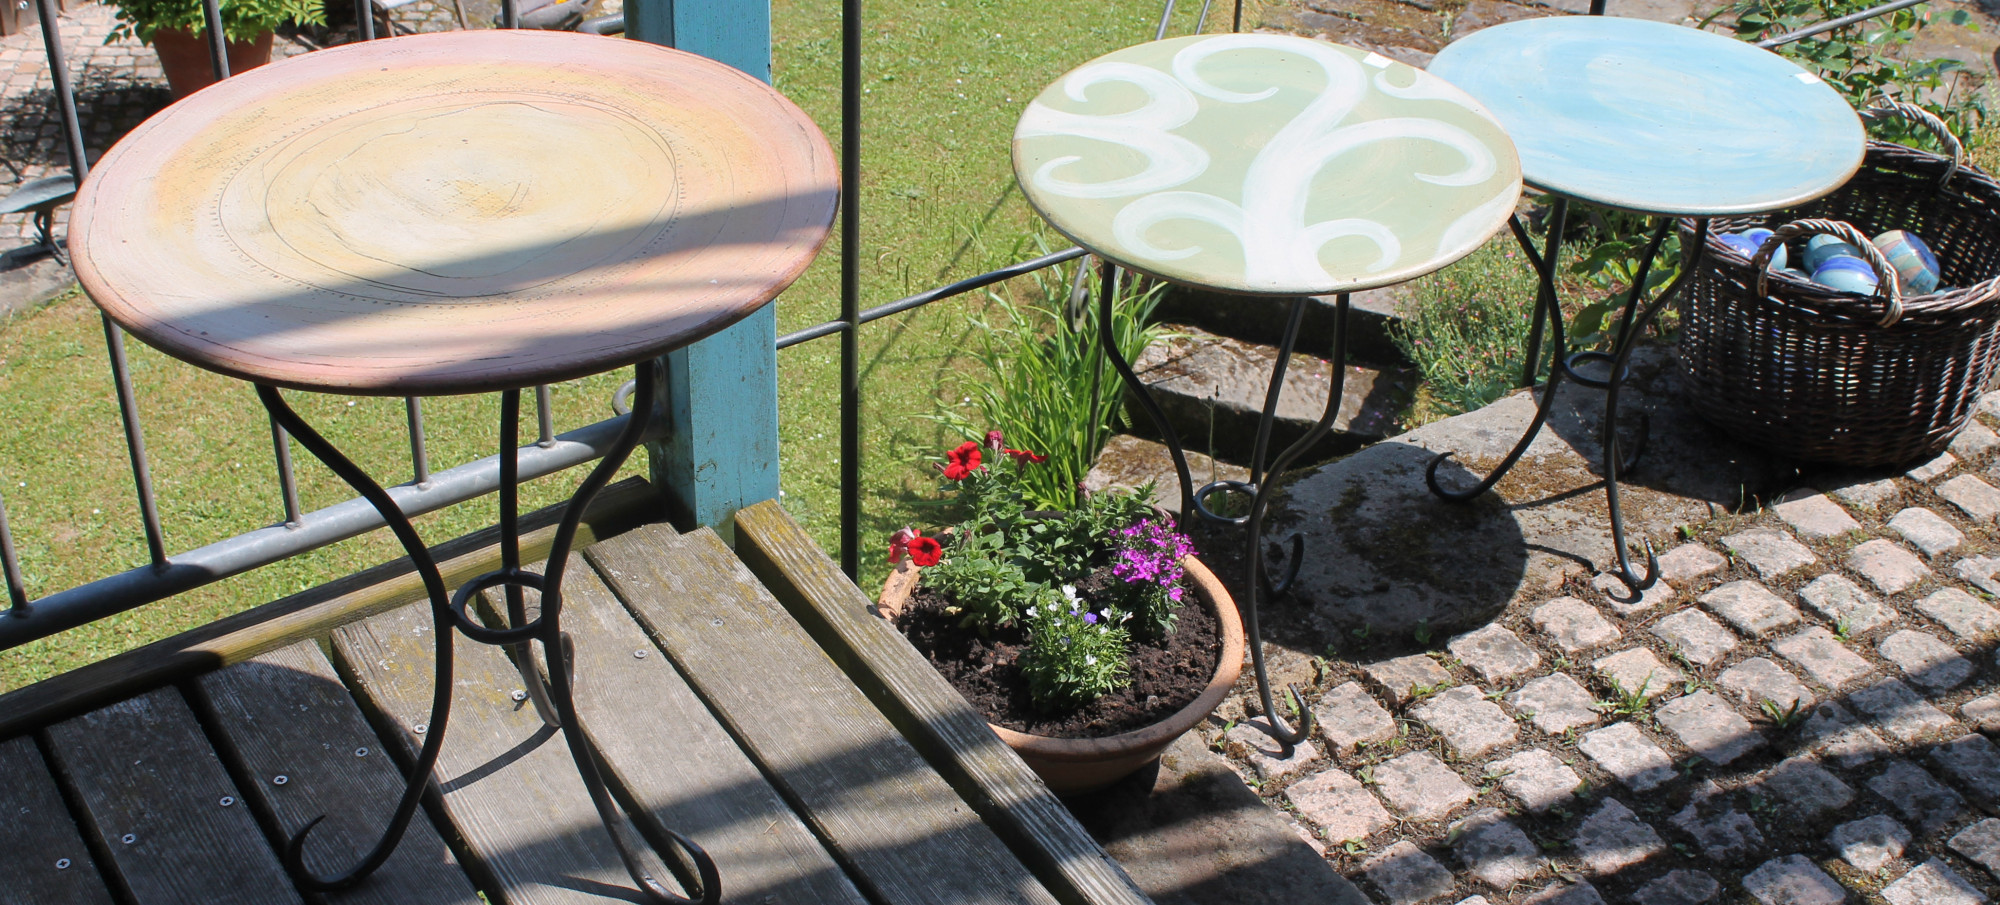 Drei runde Terrassentische mit Tischplatten aus farbig glasierter Keramik